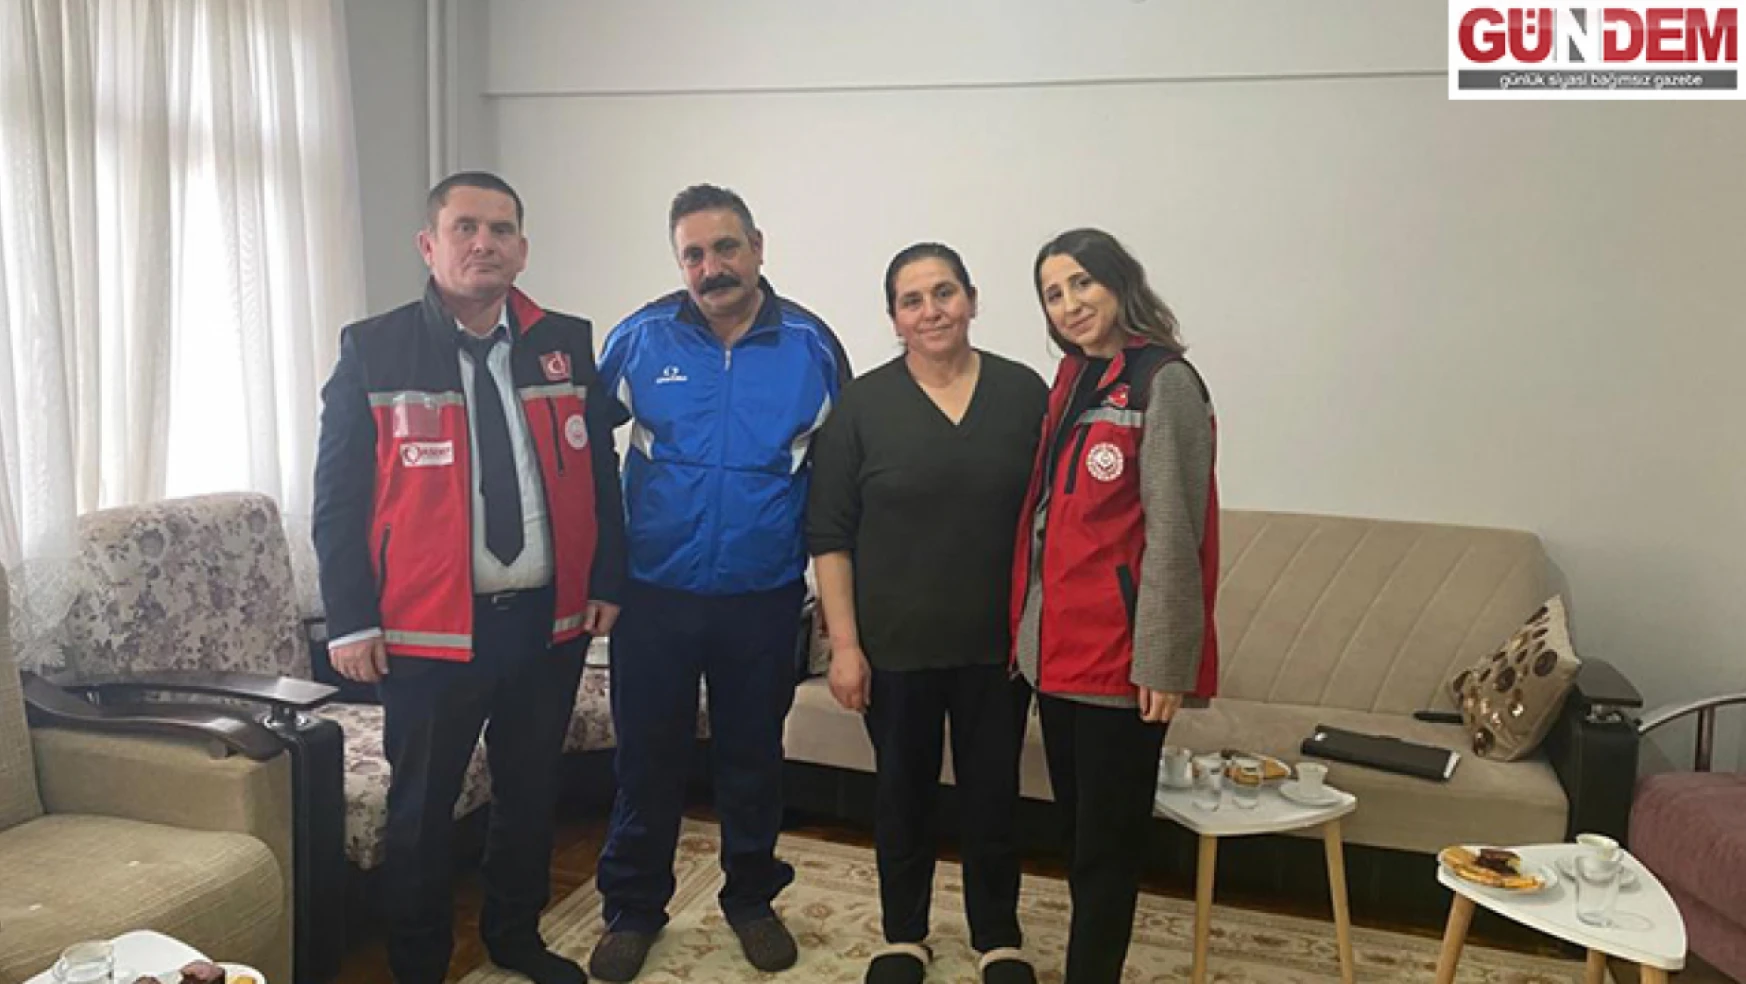 Edirne'de psikosoyal destek ekipleri afetzede aileleri evlerinde ziyaret ediyor